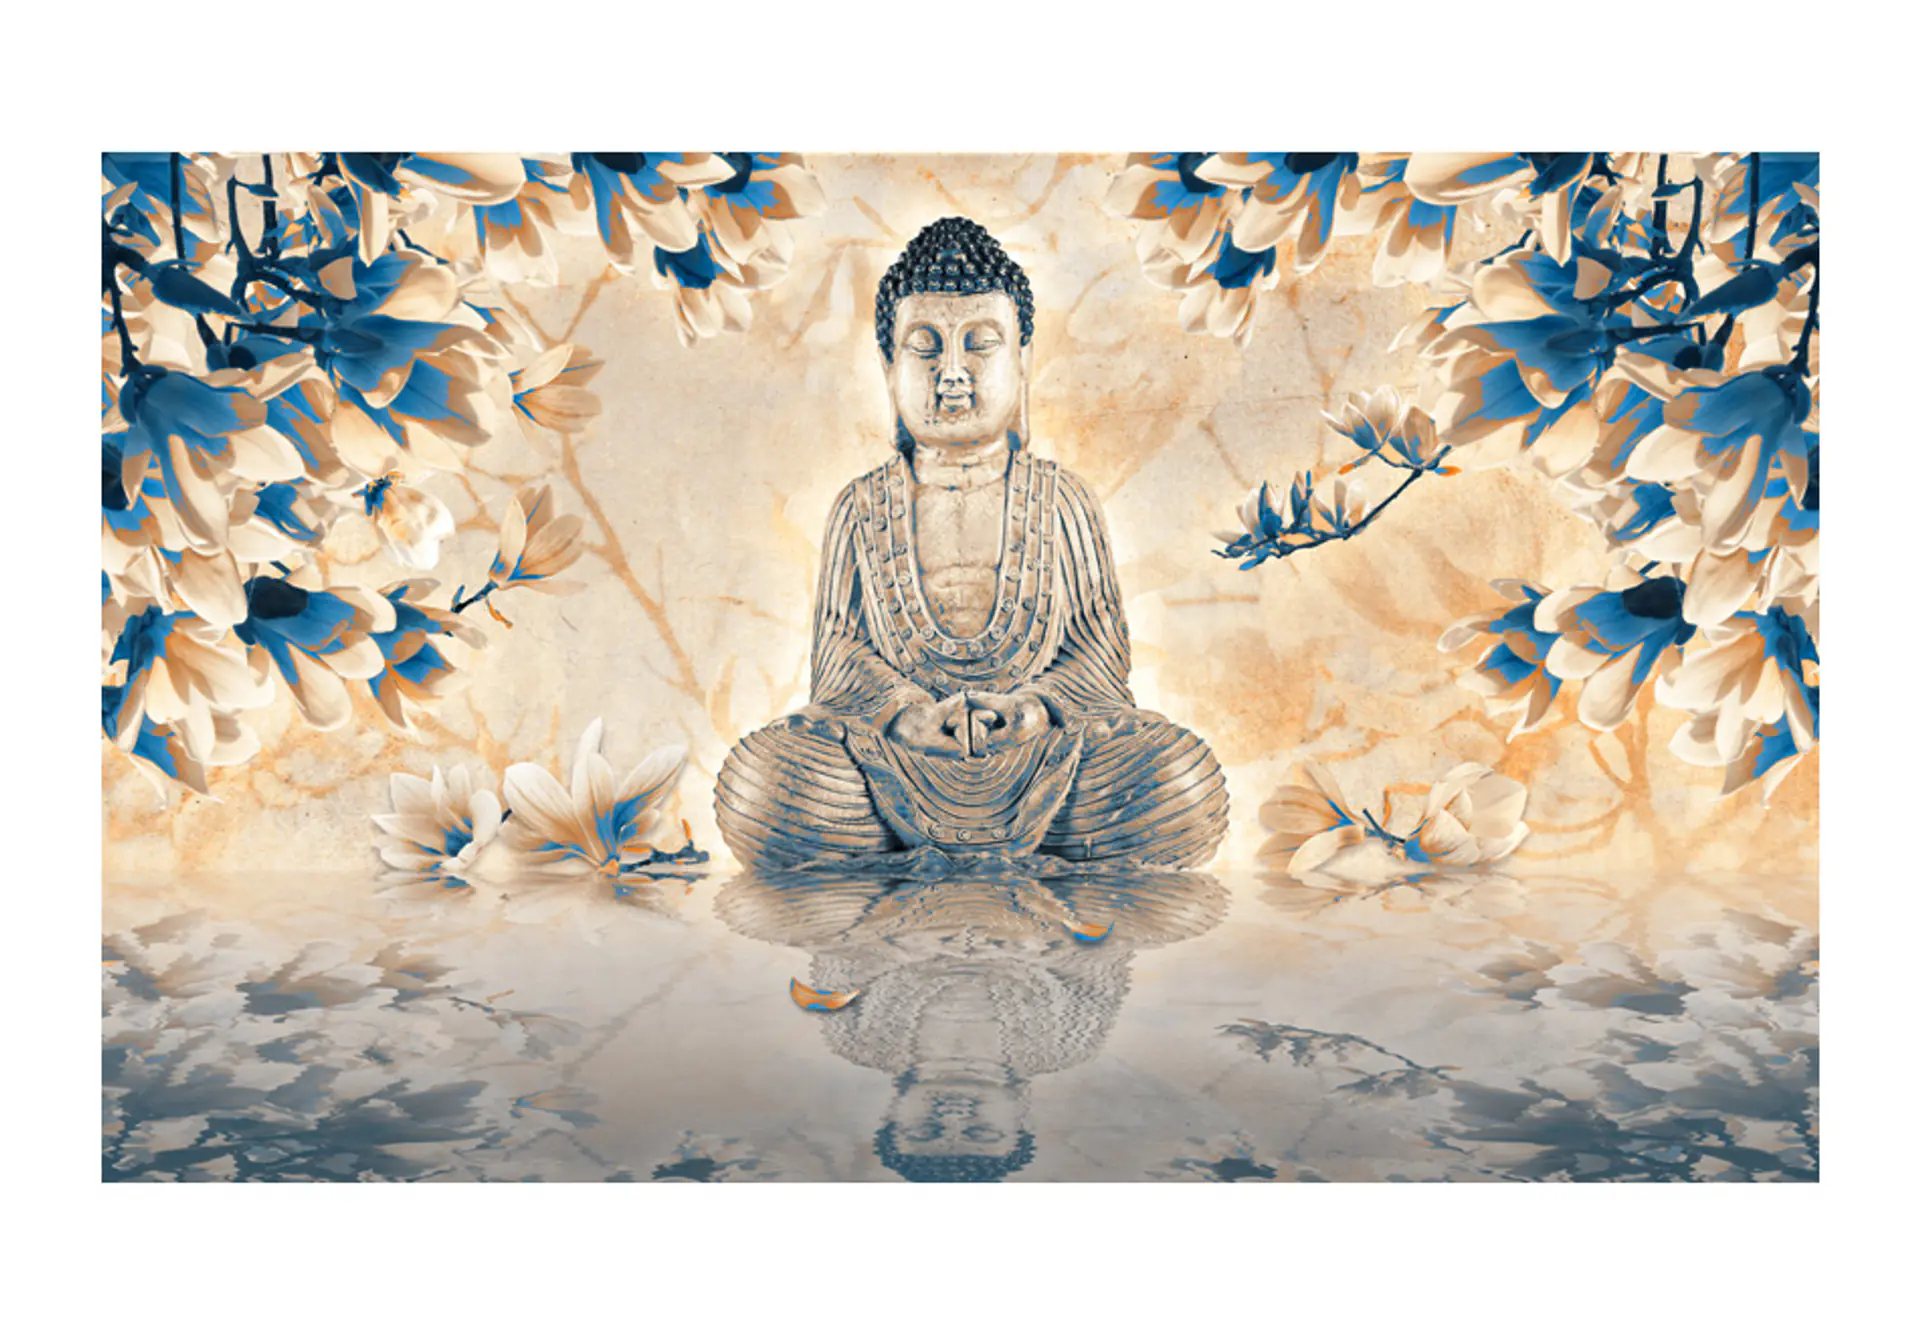 

Fototapeta - Buddha of prosperity (rozmiar 450x270)